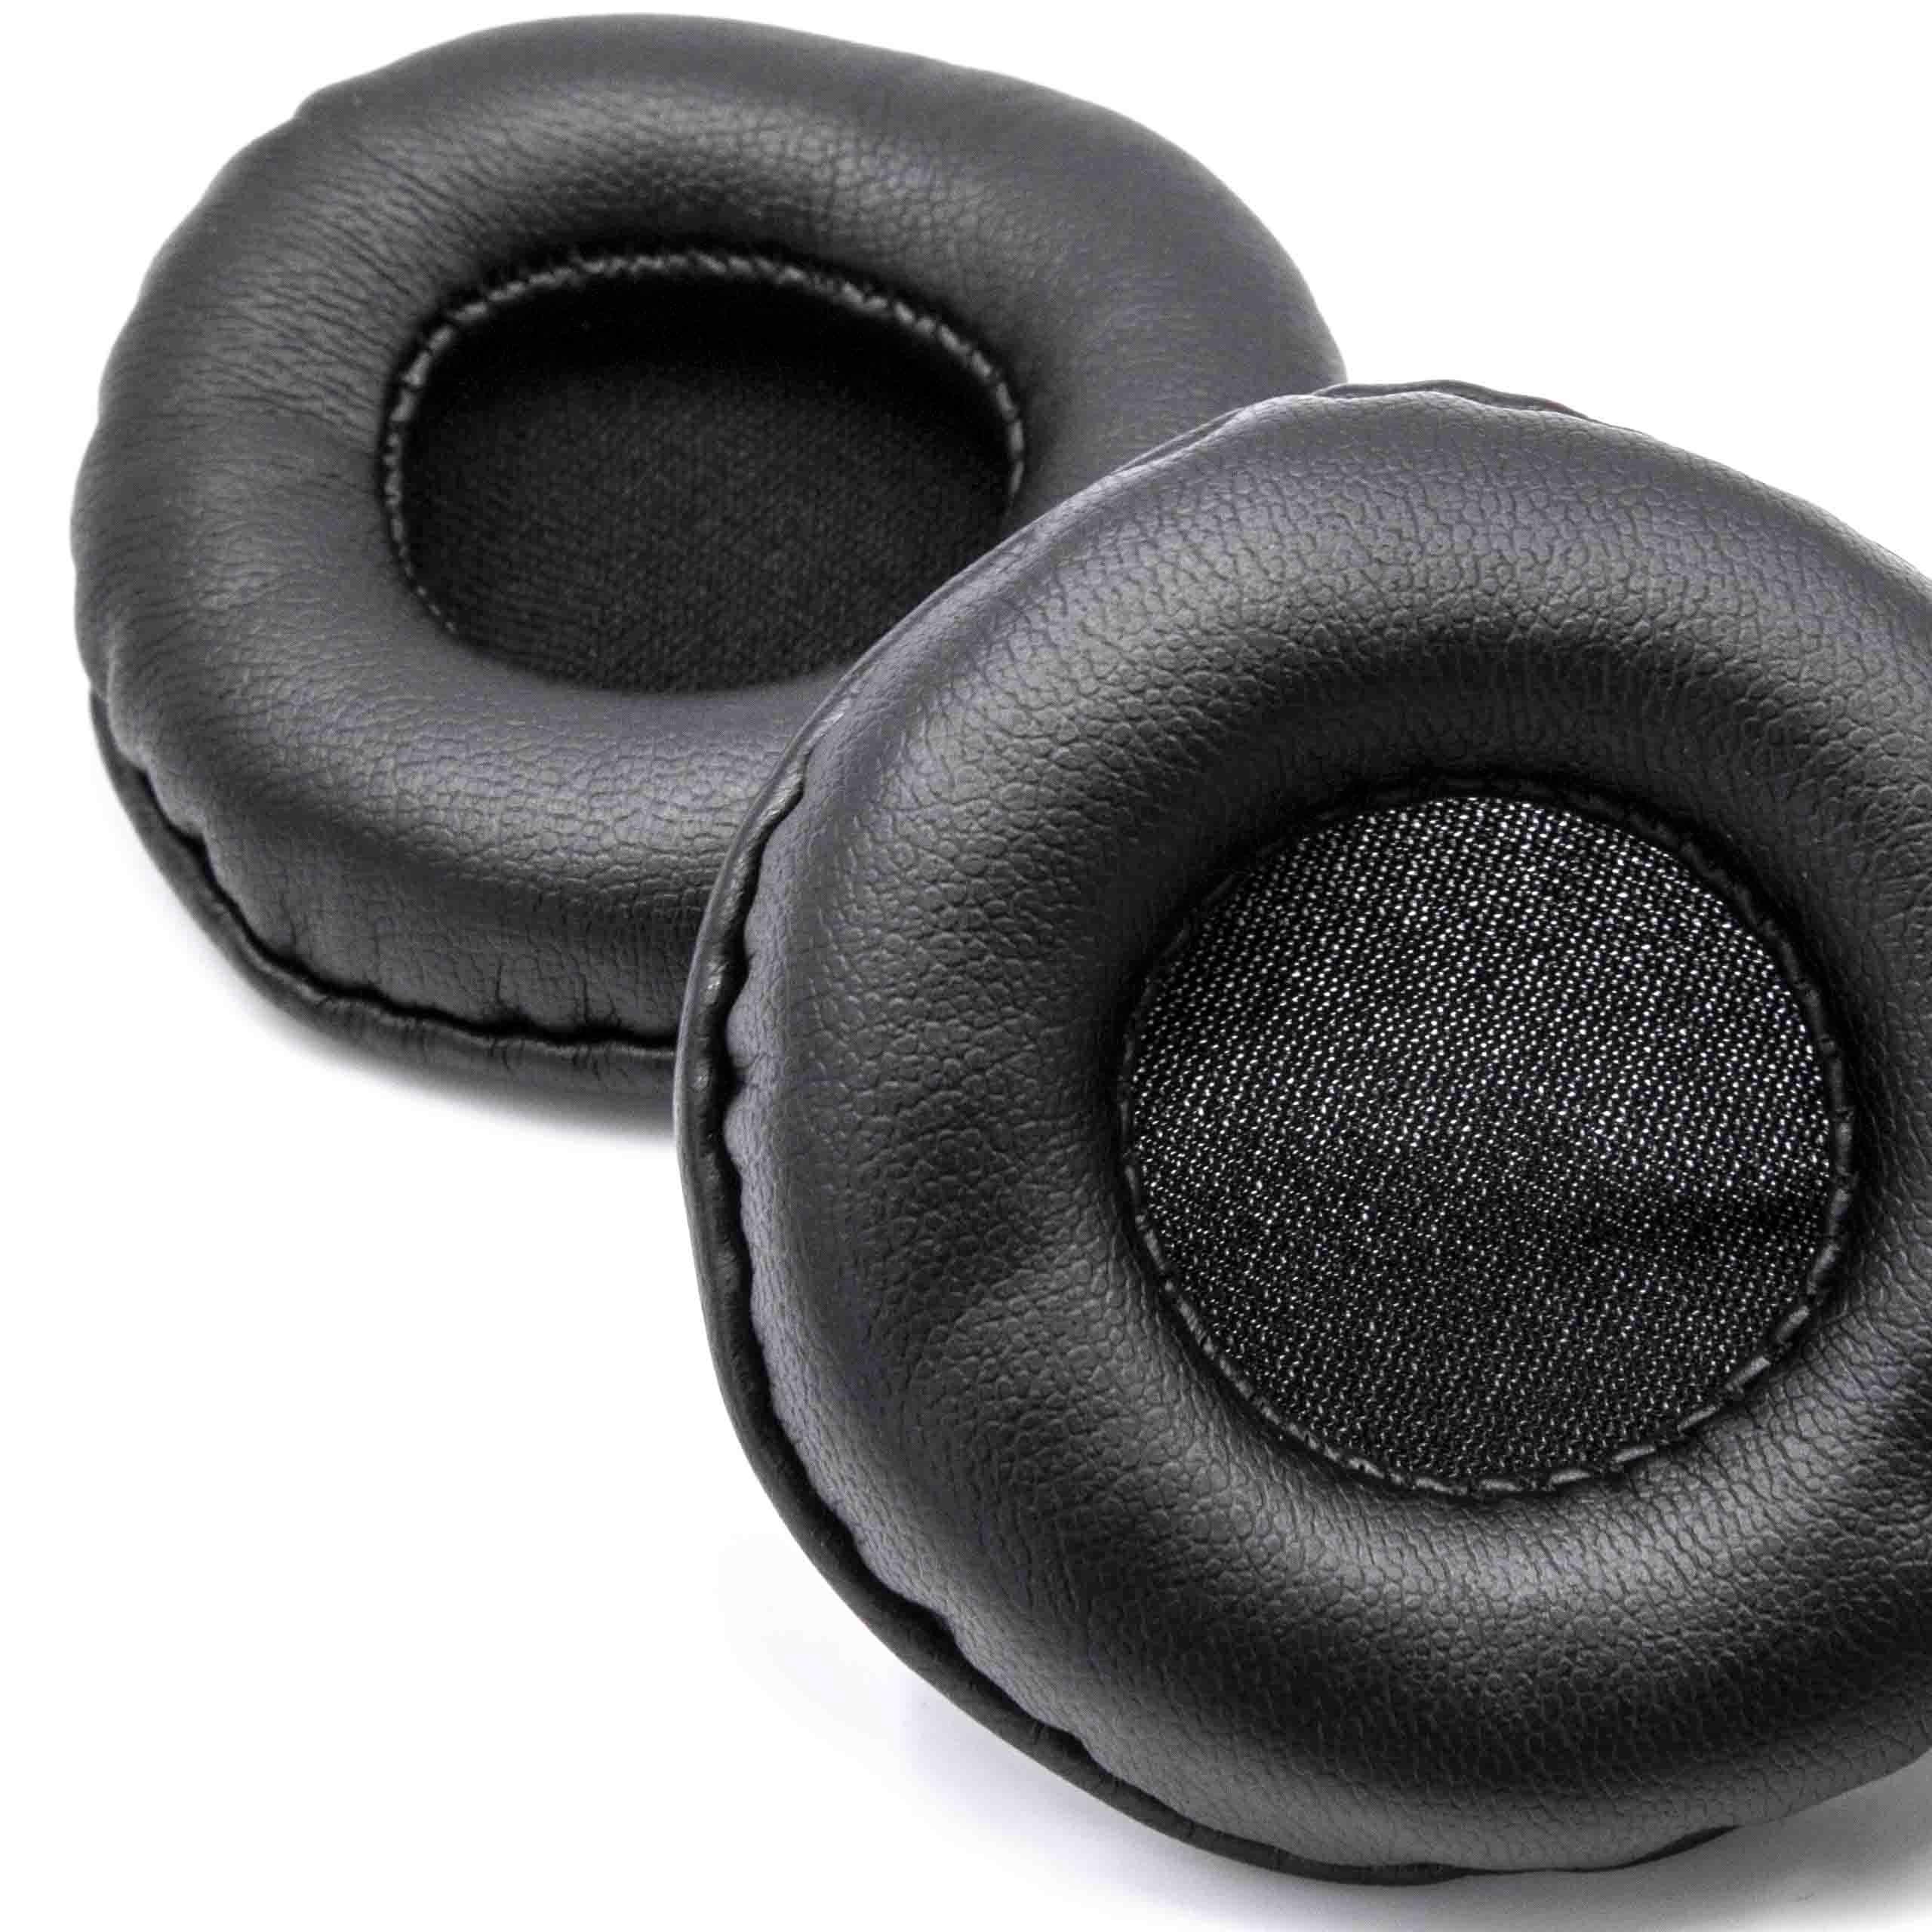 2x Coussinets d'oreille 60cm pour casque ATH / écouteurs nécessitant des coussinets de 60 mm / Sony ES55 et au